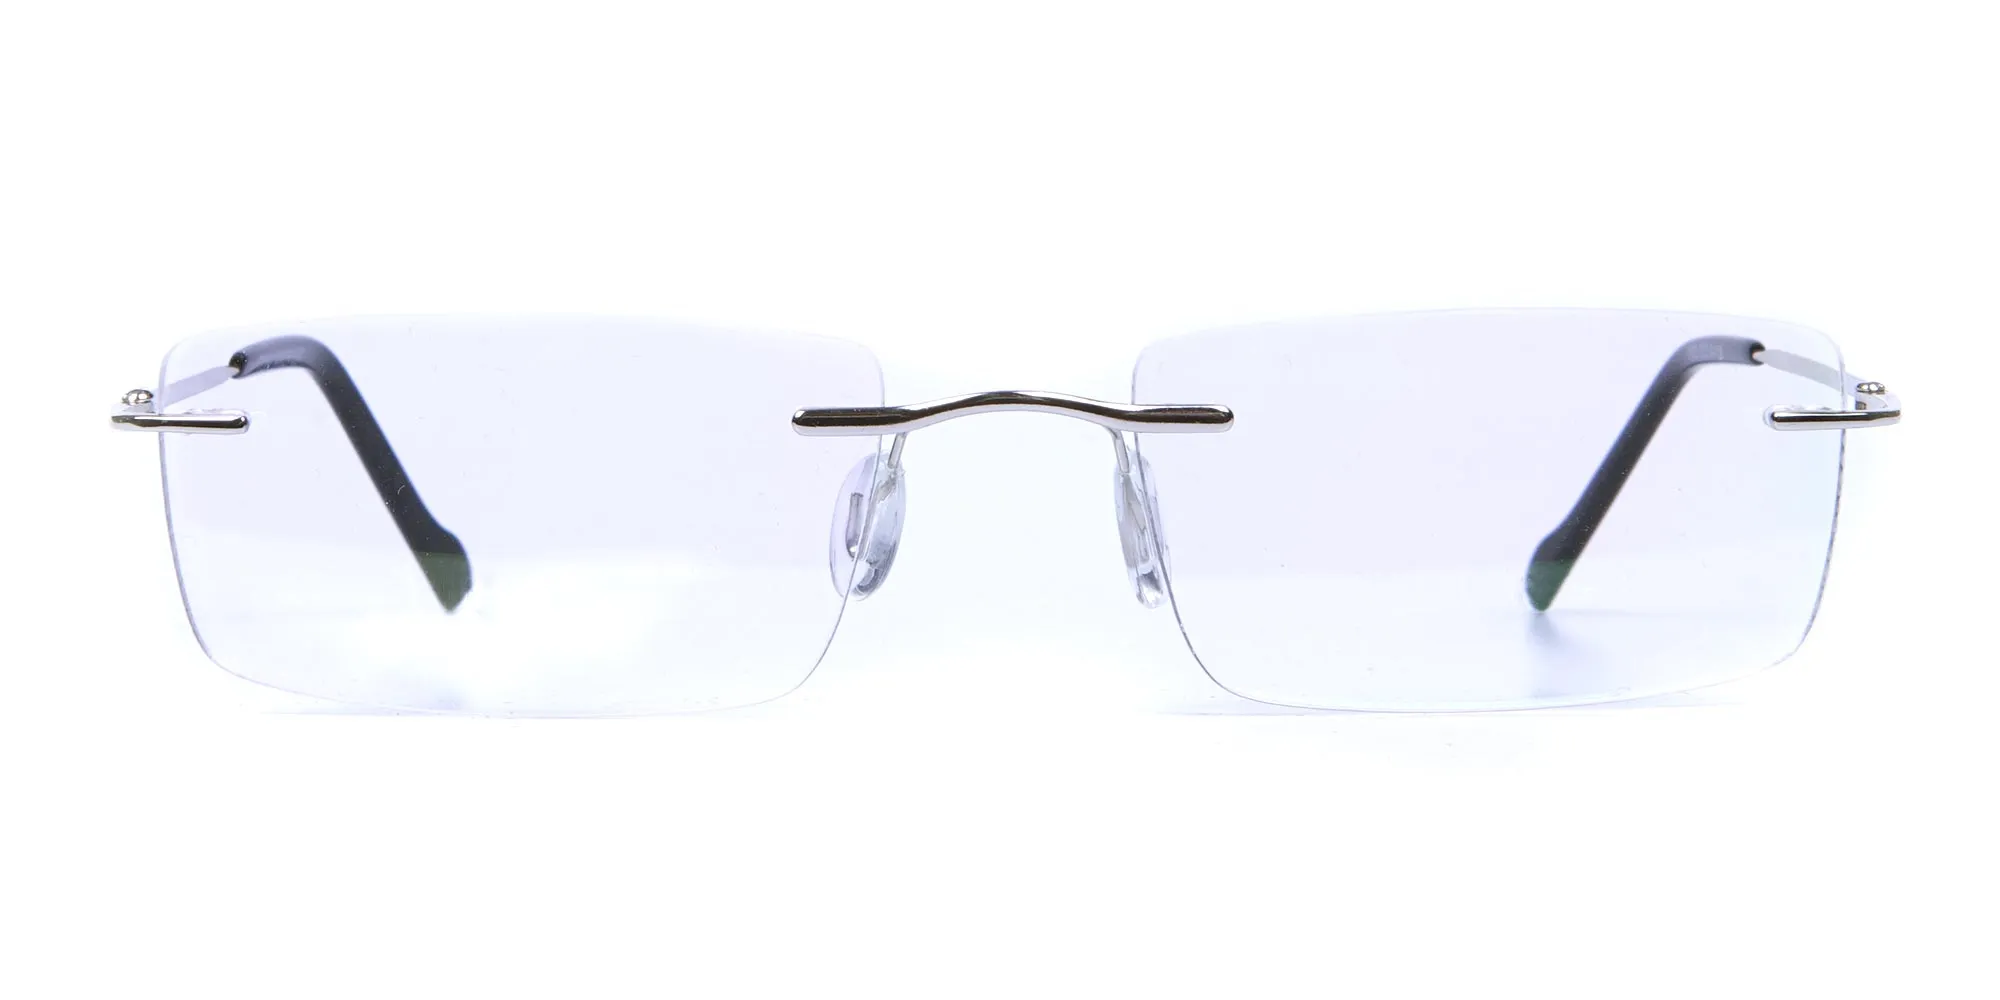 Rimless Glasses in Silver for Men & Women - 2